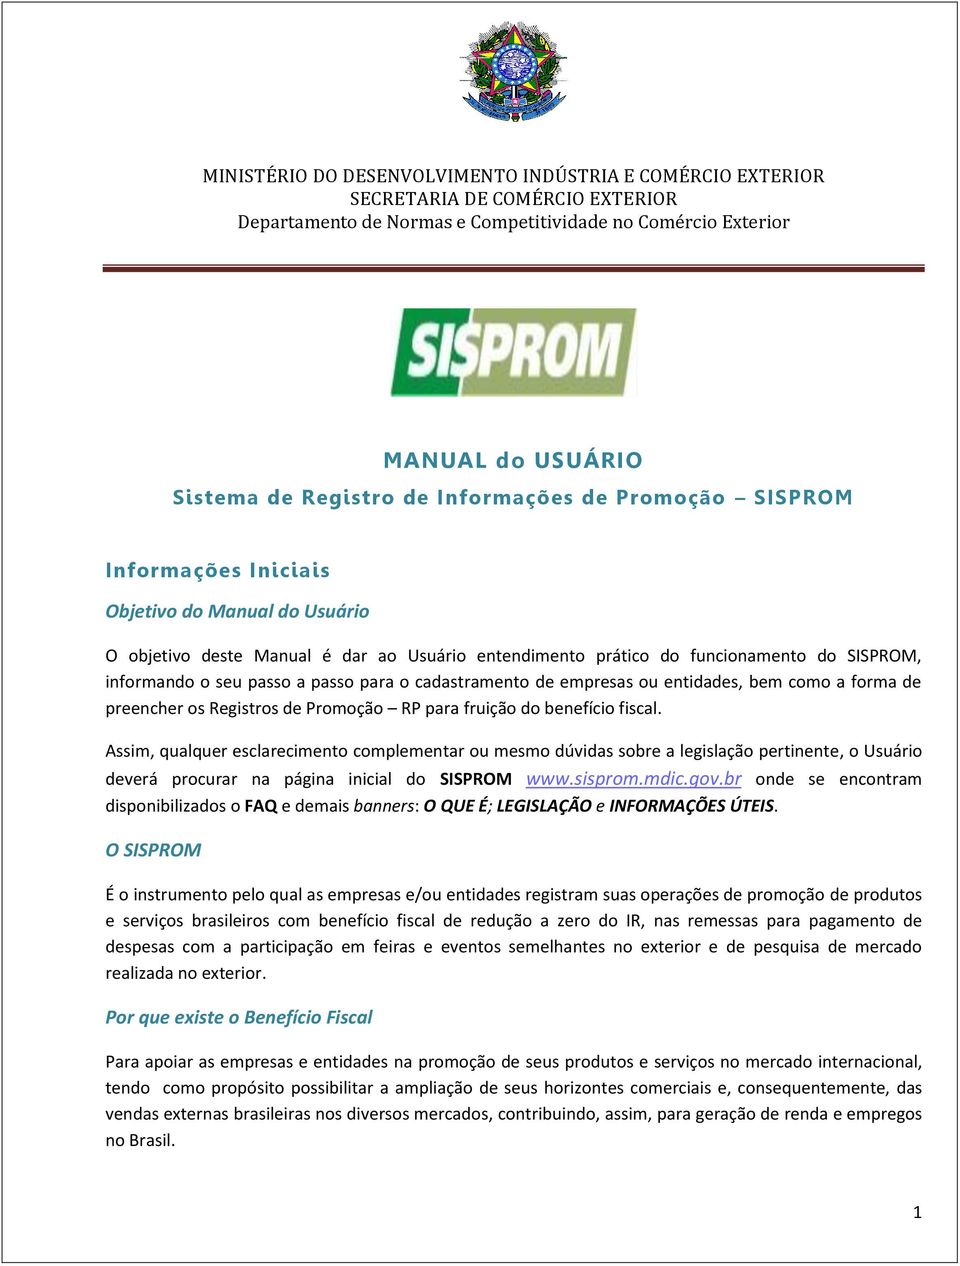 Assim, qualquer esclarecimento complementar ou mesmo dúvidas sobre a legislação pertinente, o Usuário deverá procurar na página inicial do SISPROM www.sisprom.mdic.gov.